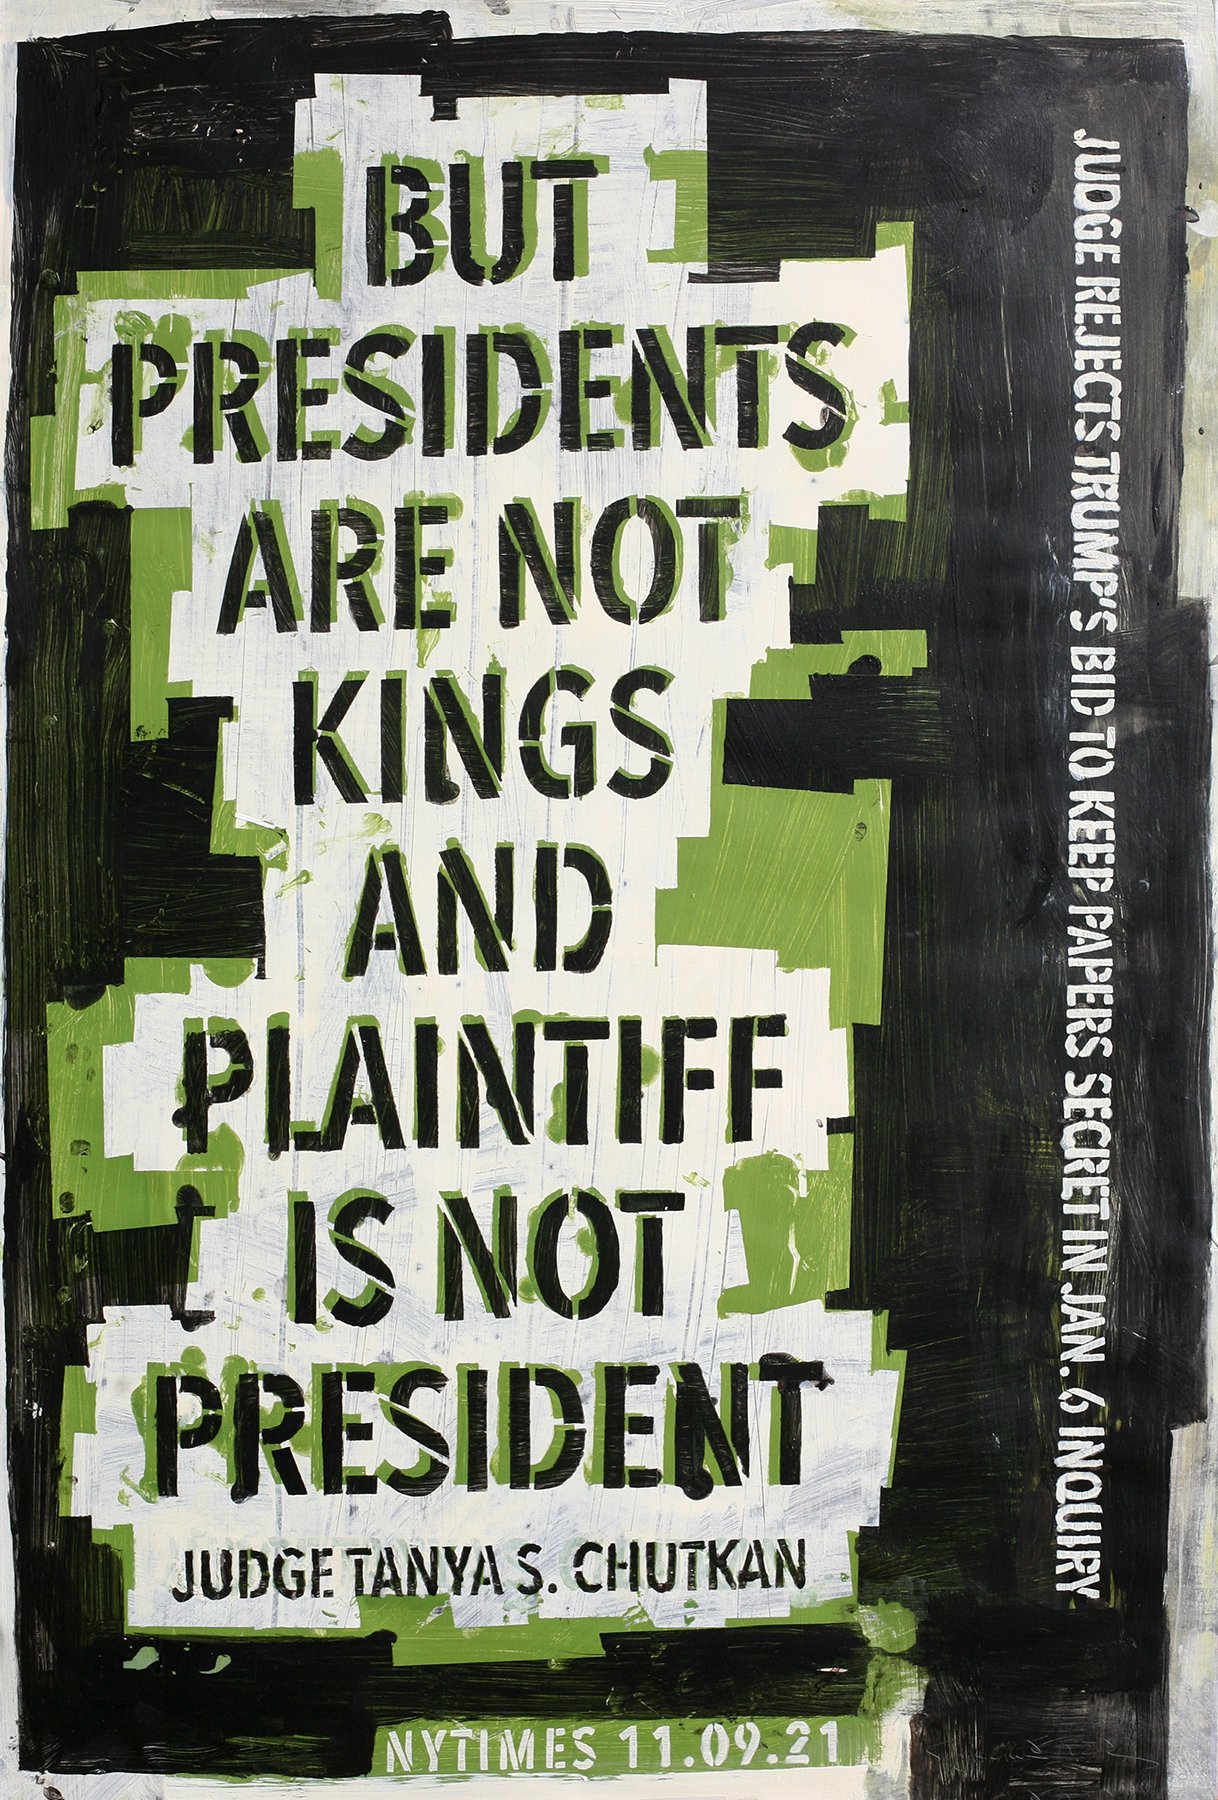 Not King, Not President